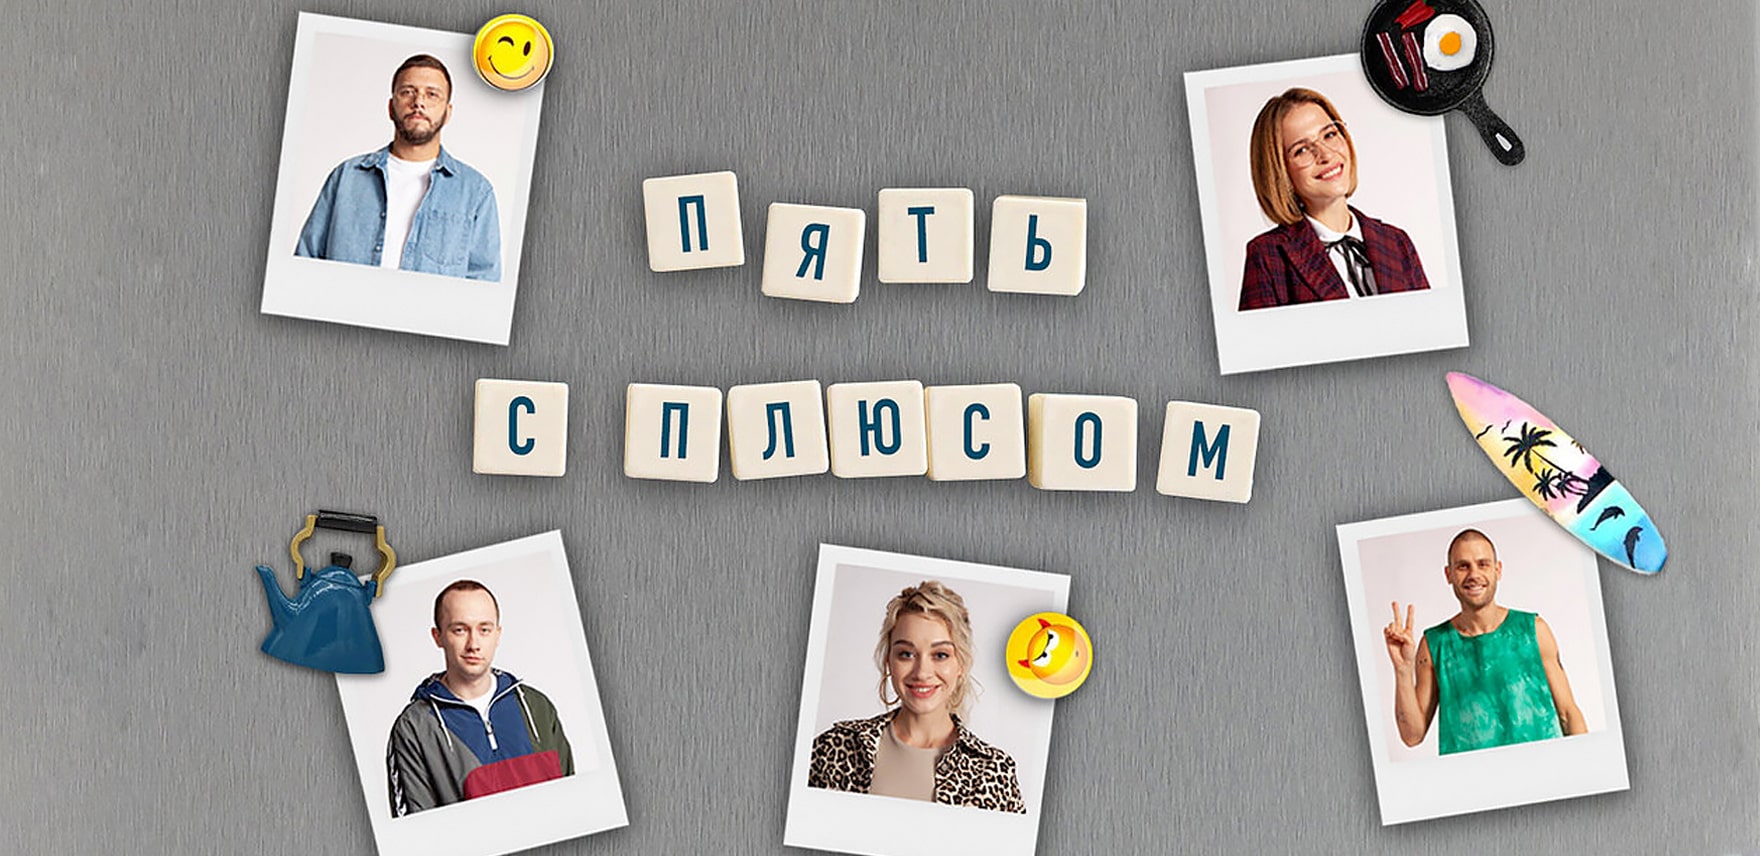 Одноклассники выпустят первый собственный сериал «Пять с плюсом» к 15-летию соцсети